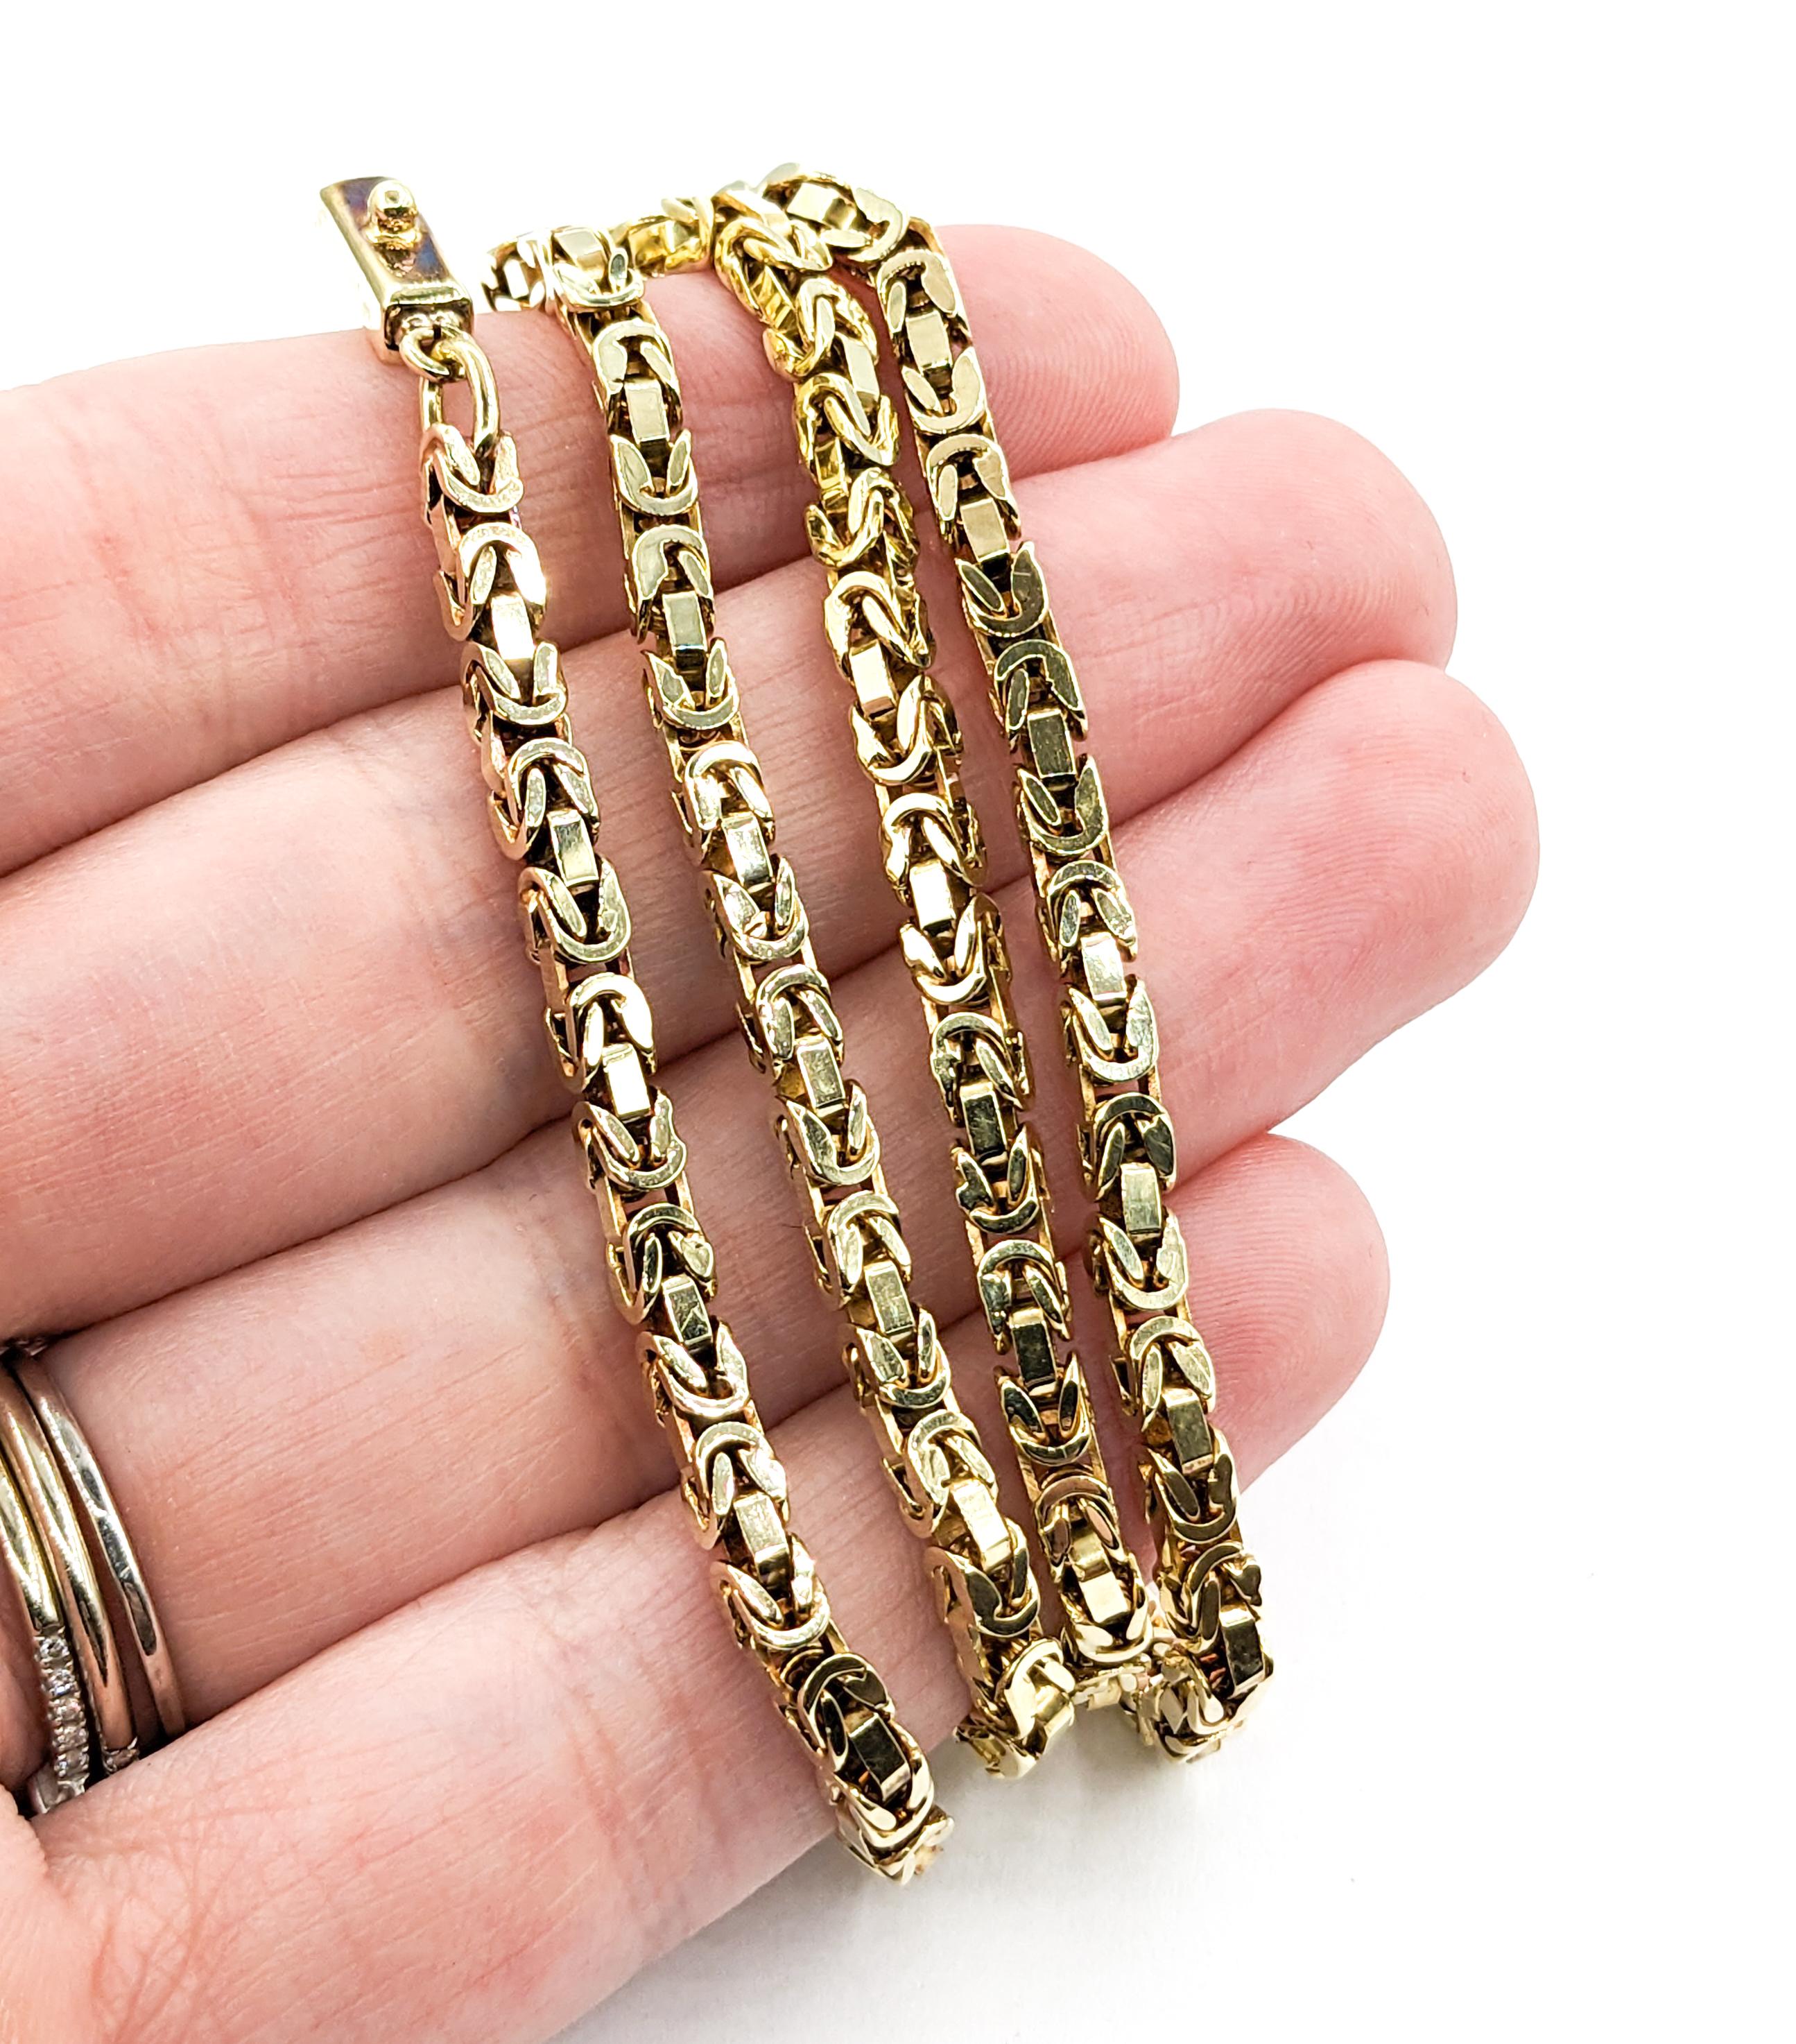 Byzantinische 3mm Halskette aus Gelbgold


Entdecken Sie die exquisite Handwerkskunst unserer Byzantinischen 3mm Halskette, die meisterhaft aus 14k Gelbgold gefertigt ist. Diese luxuriöse Halskette mit ihrem filigranen byzantinischen Design ist ein